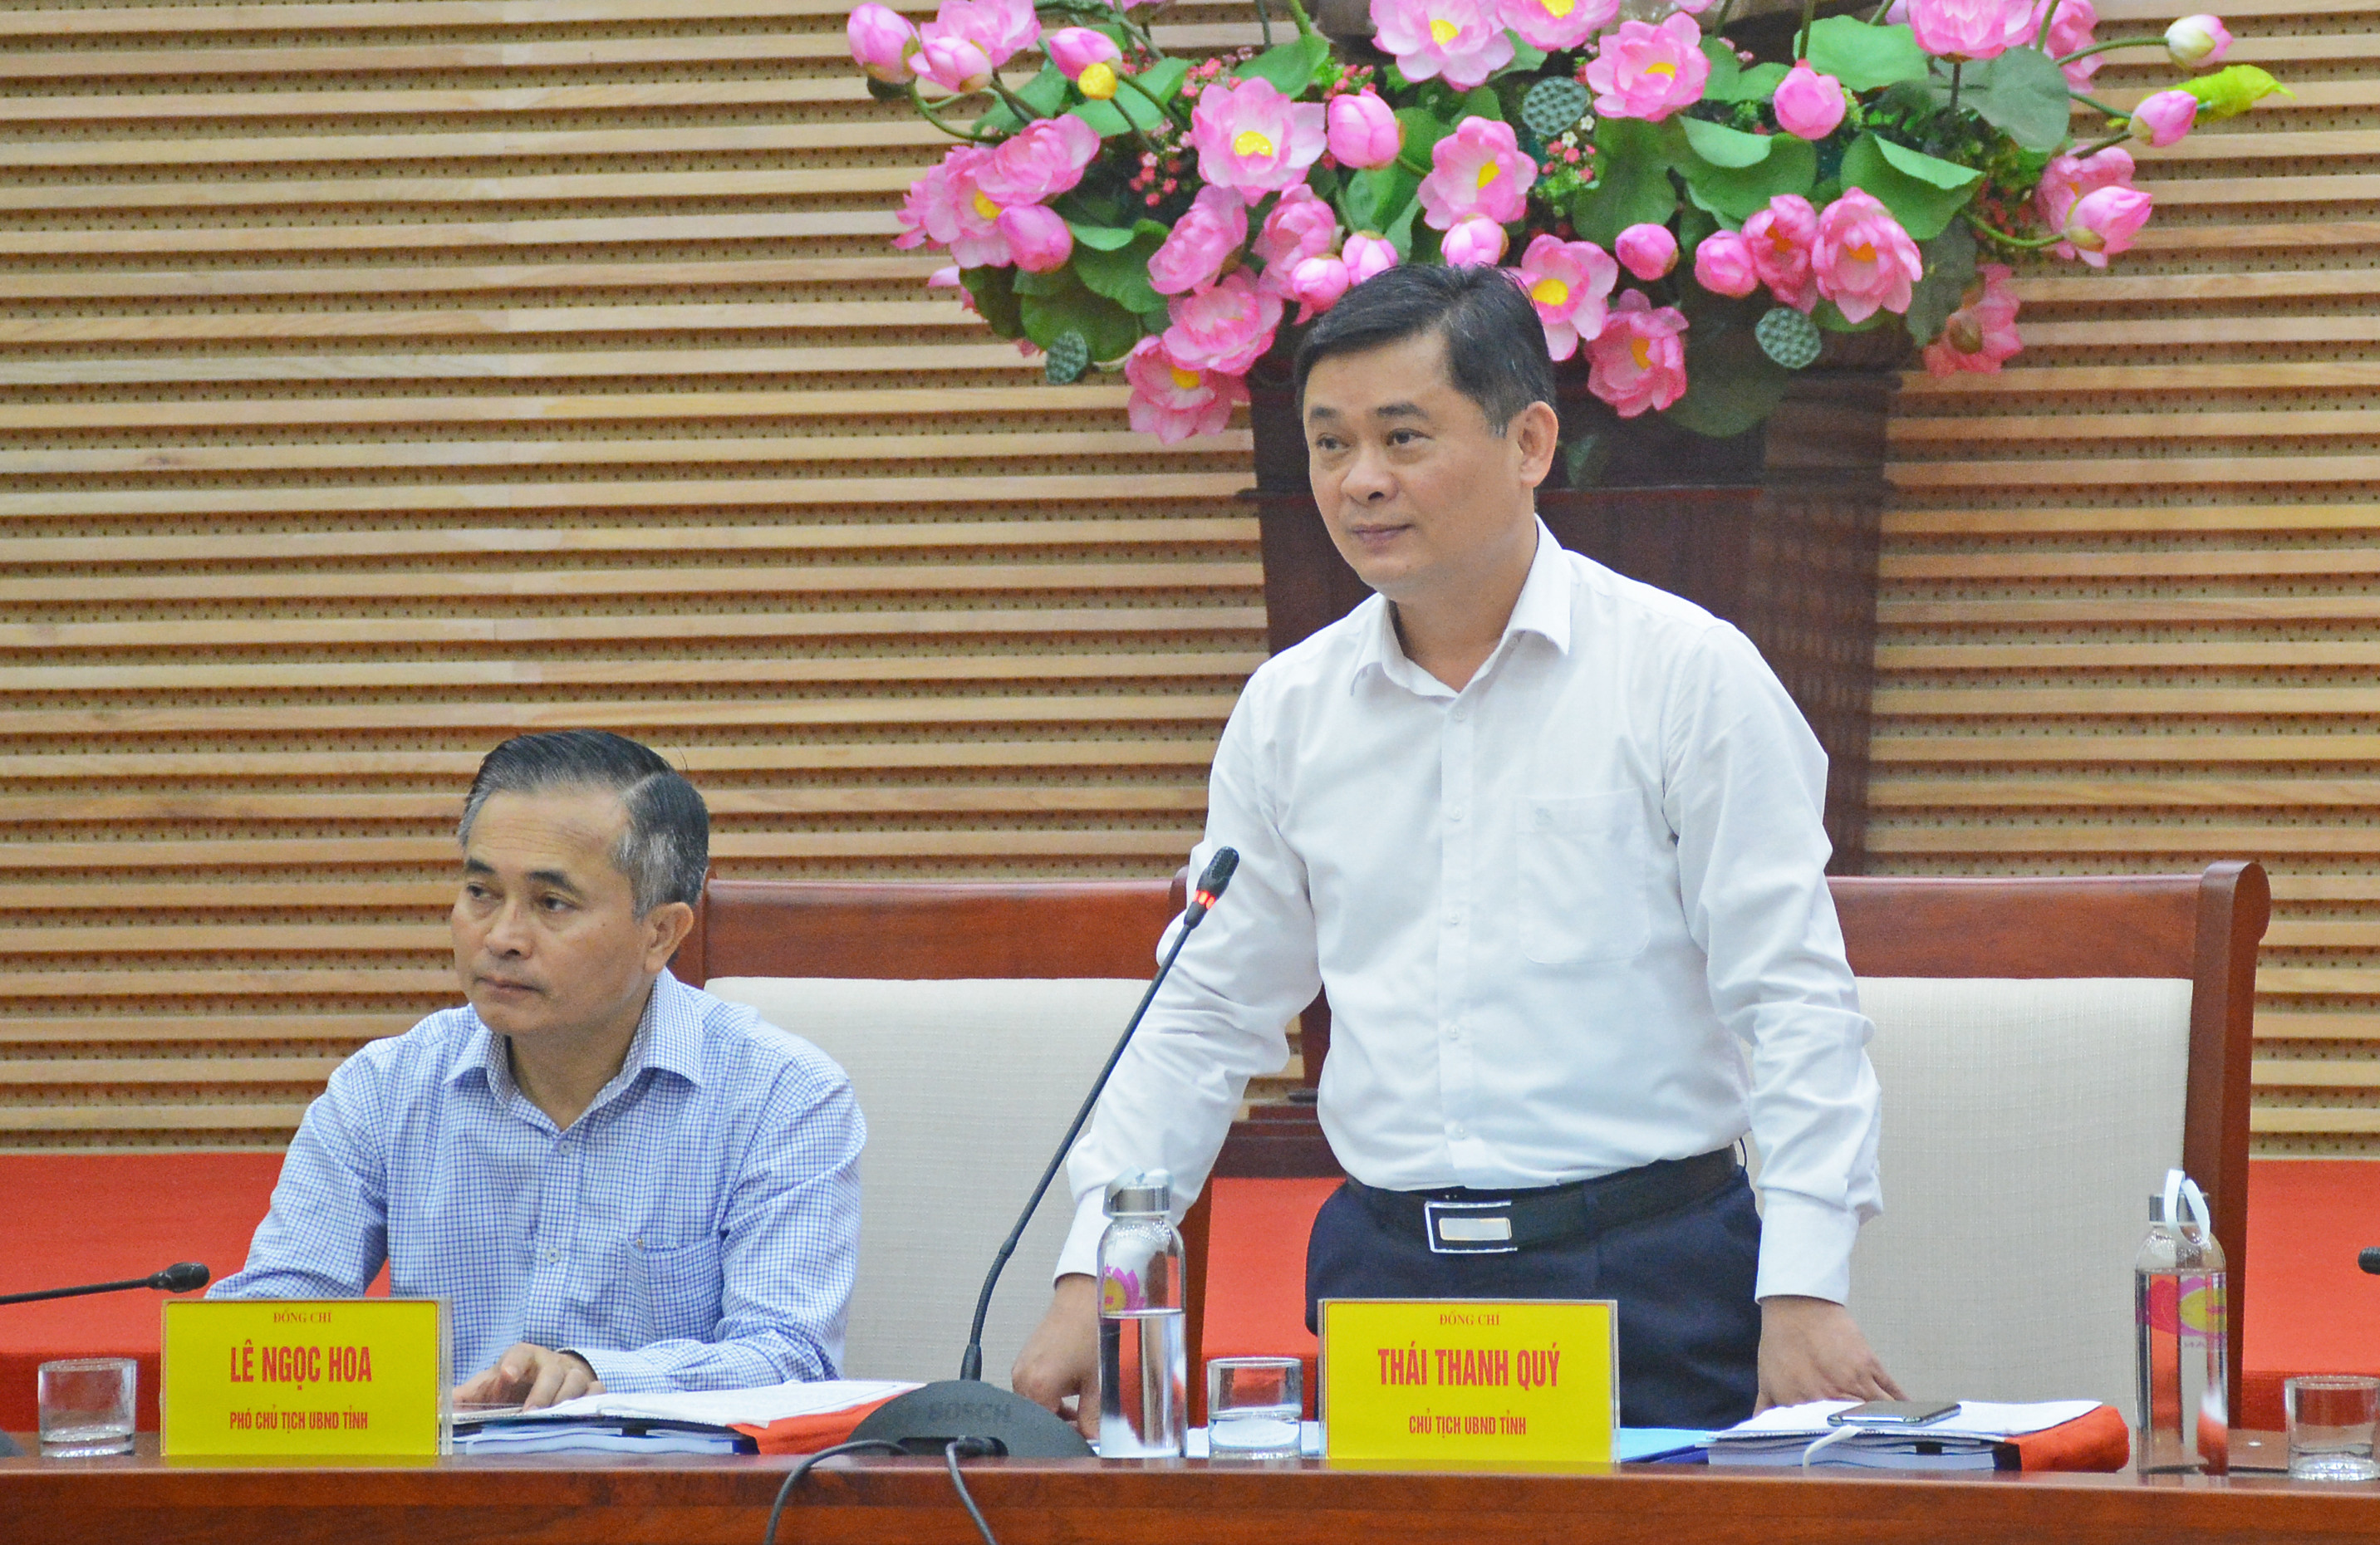 Chủ tịch UBND tỉnh Thái Thanh Quý lưu ý quan tâm đến các nguồn có nguy cơ gây ô nhiễm môi trường. Ảnh: Thu Giang